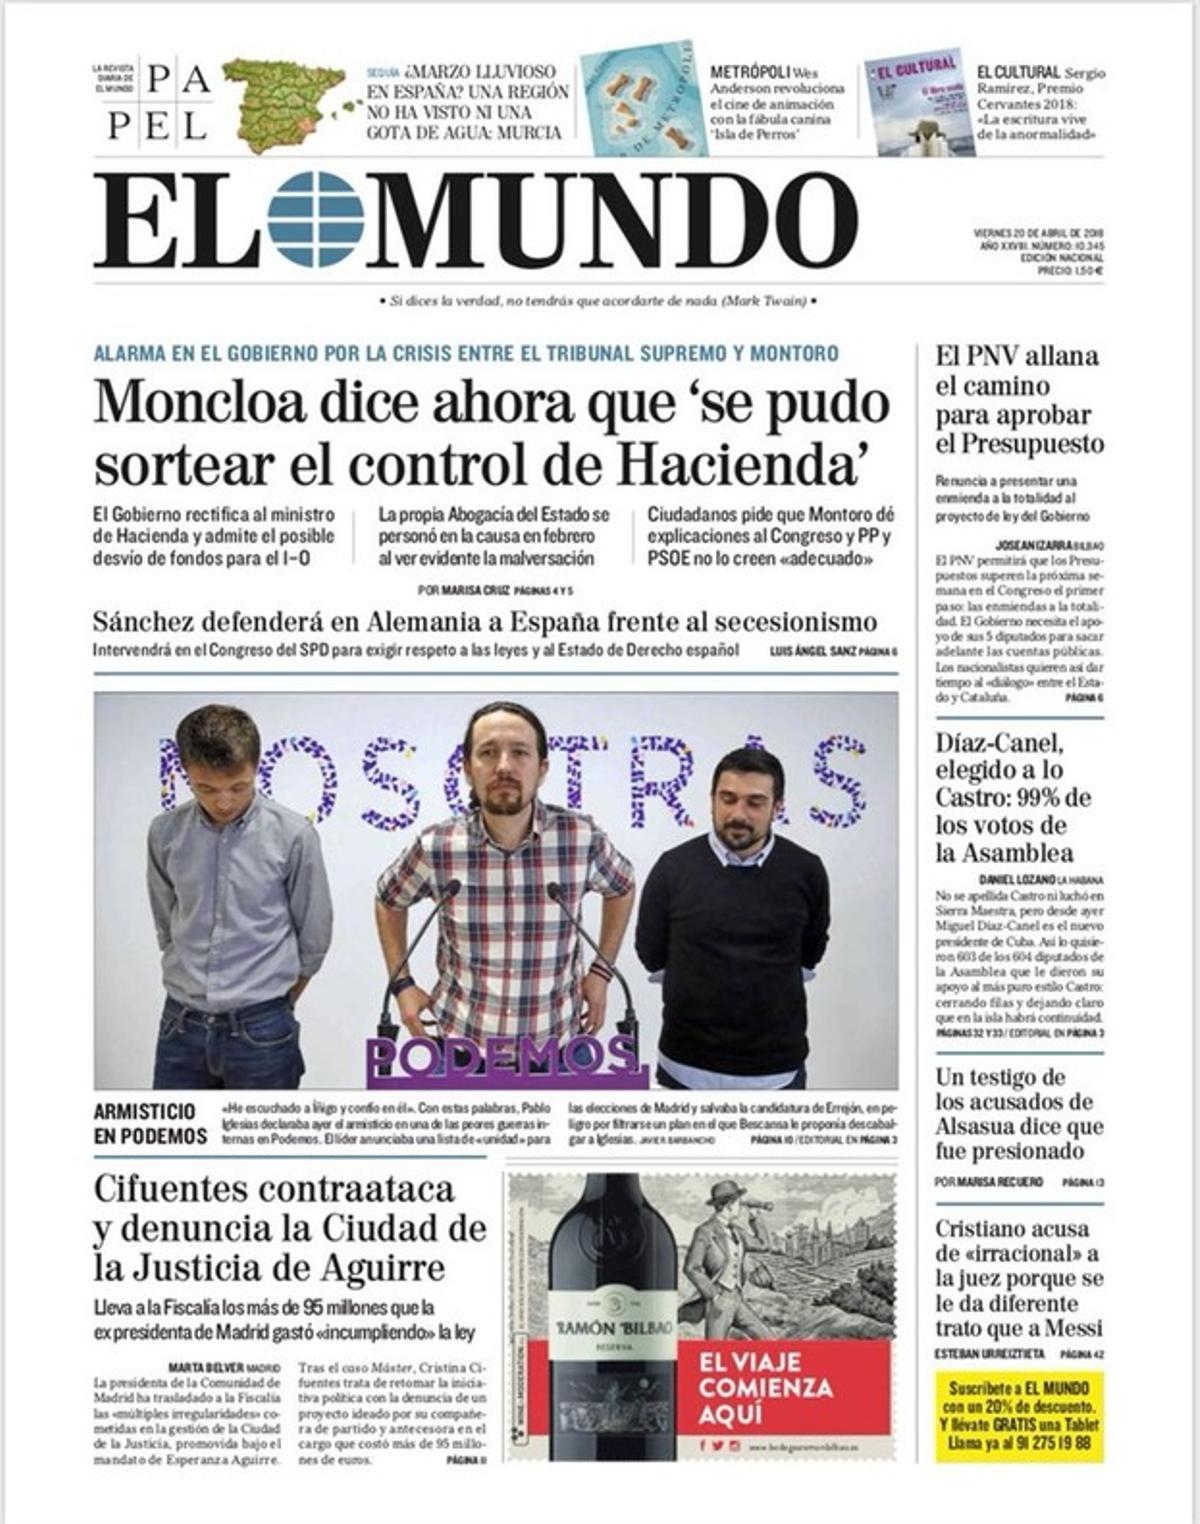 'La Razón' descubre que Llarena no puede impedir que Puigdemont y Junqueras vuelvan a ser candidatos